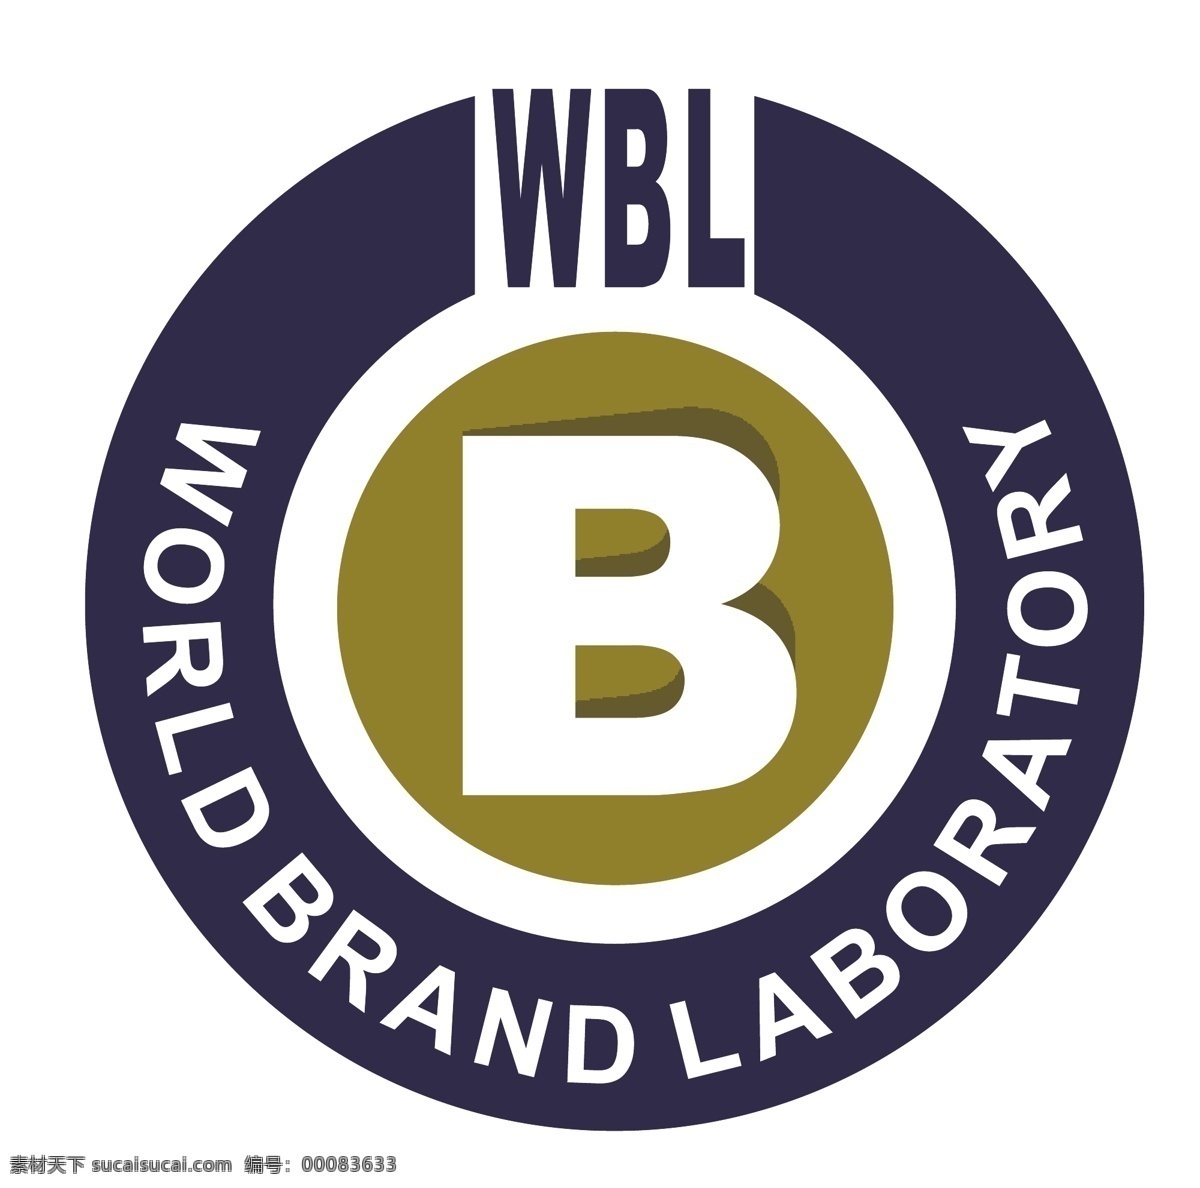 世界 品牌 实验室 自由 标志 标识 psd源文件 logo设计